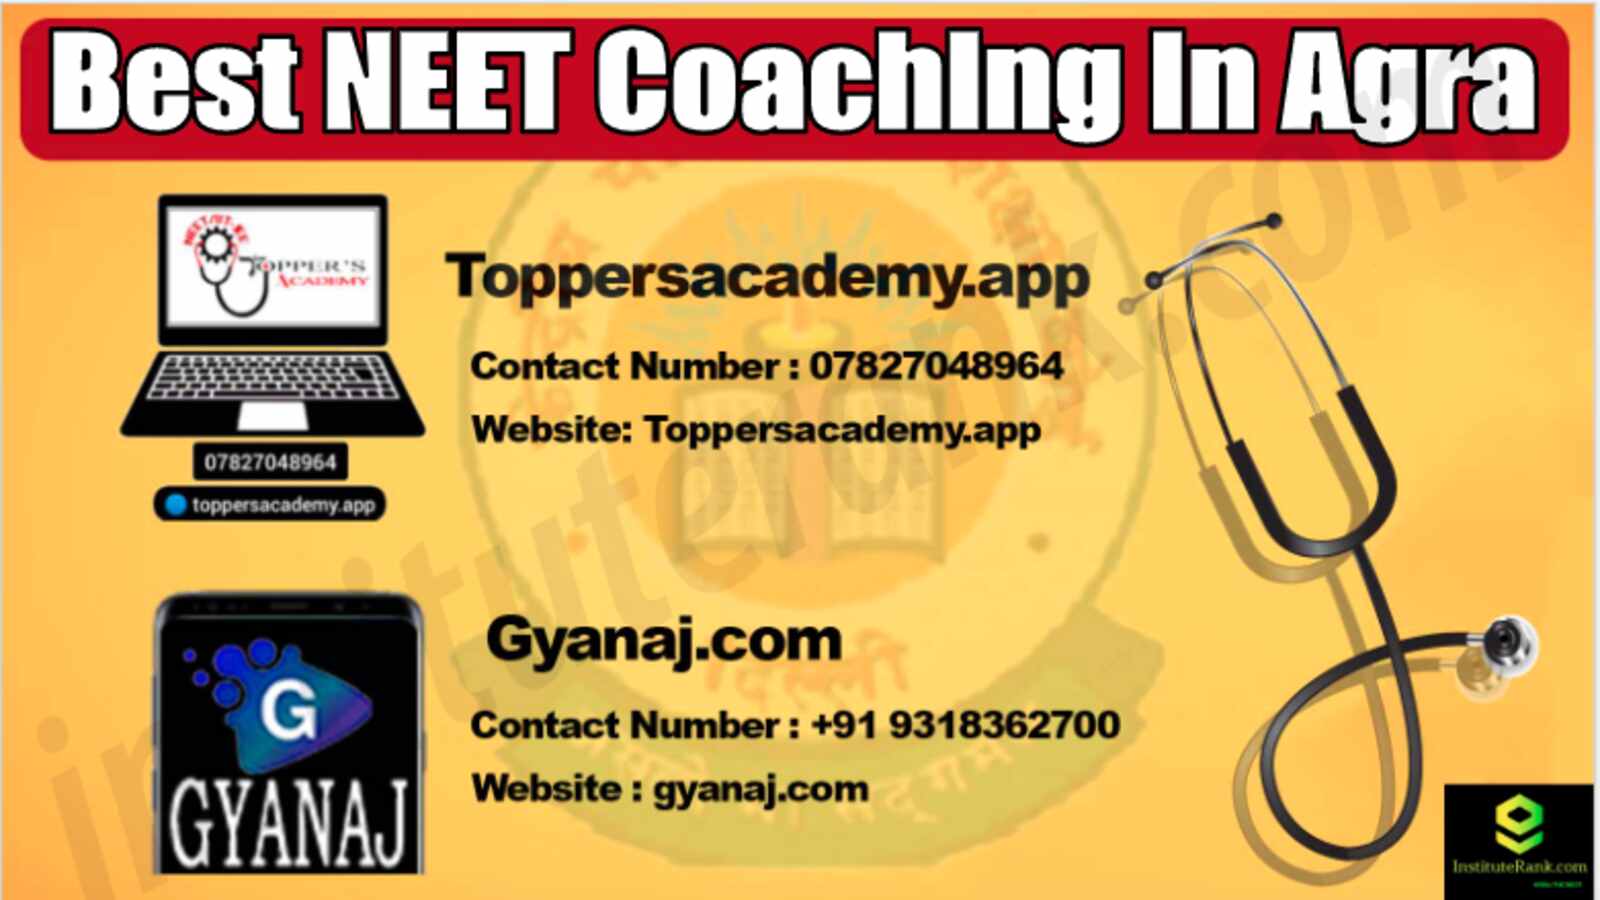 Best NEET Coaching in Agra 2022